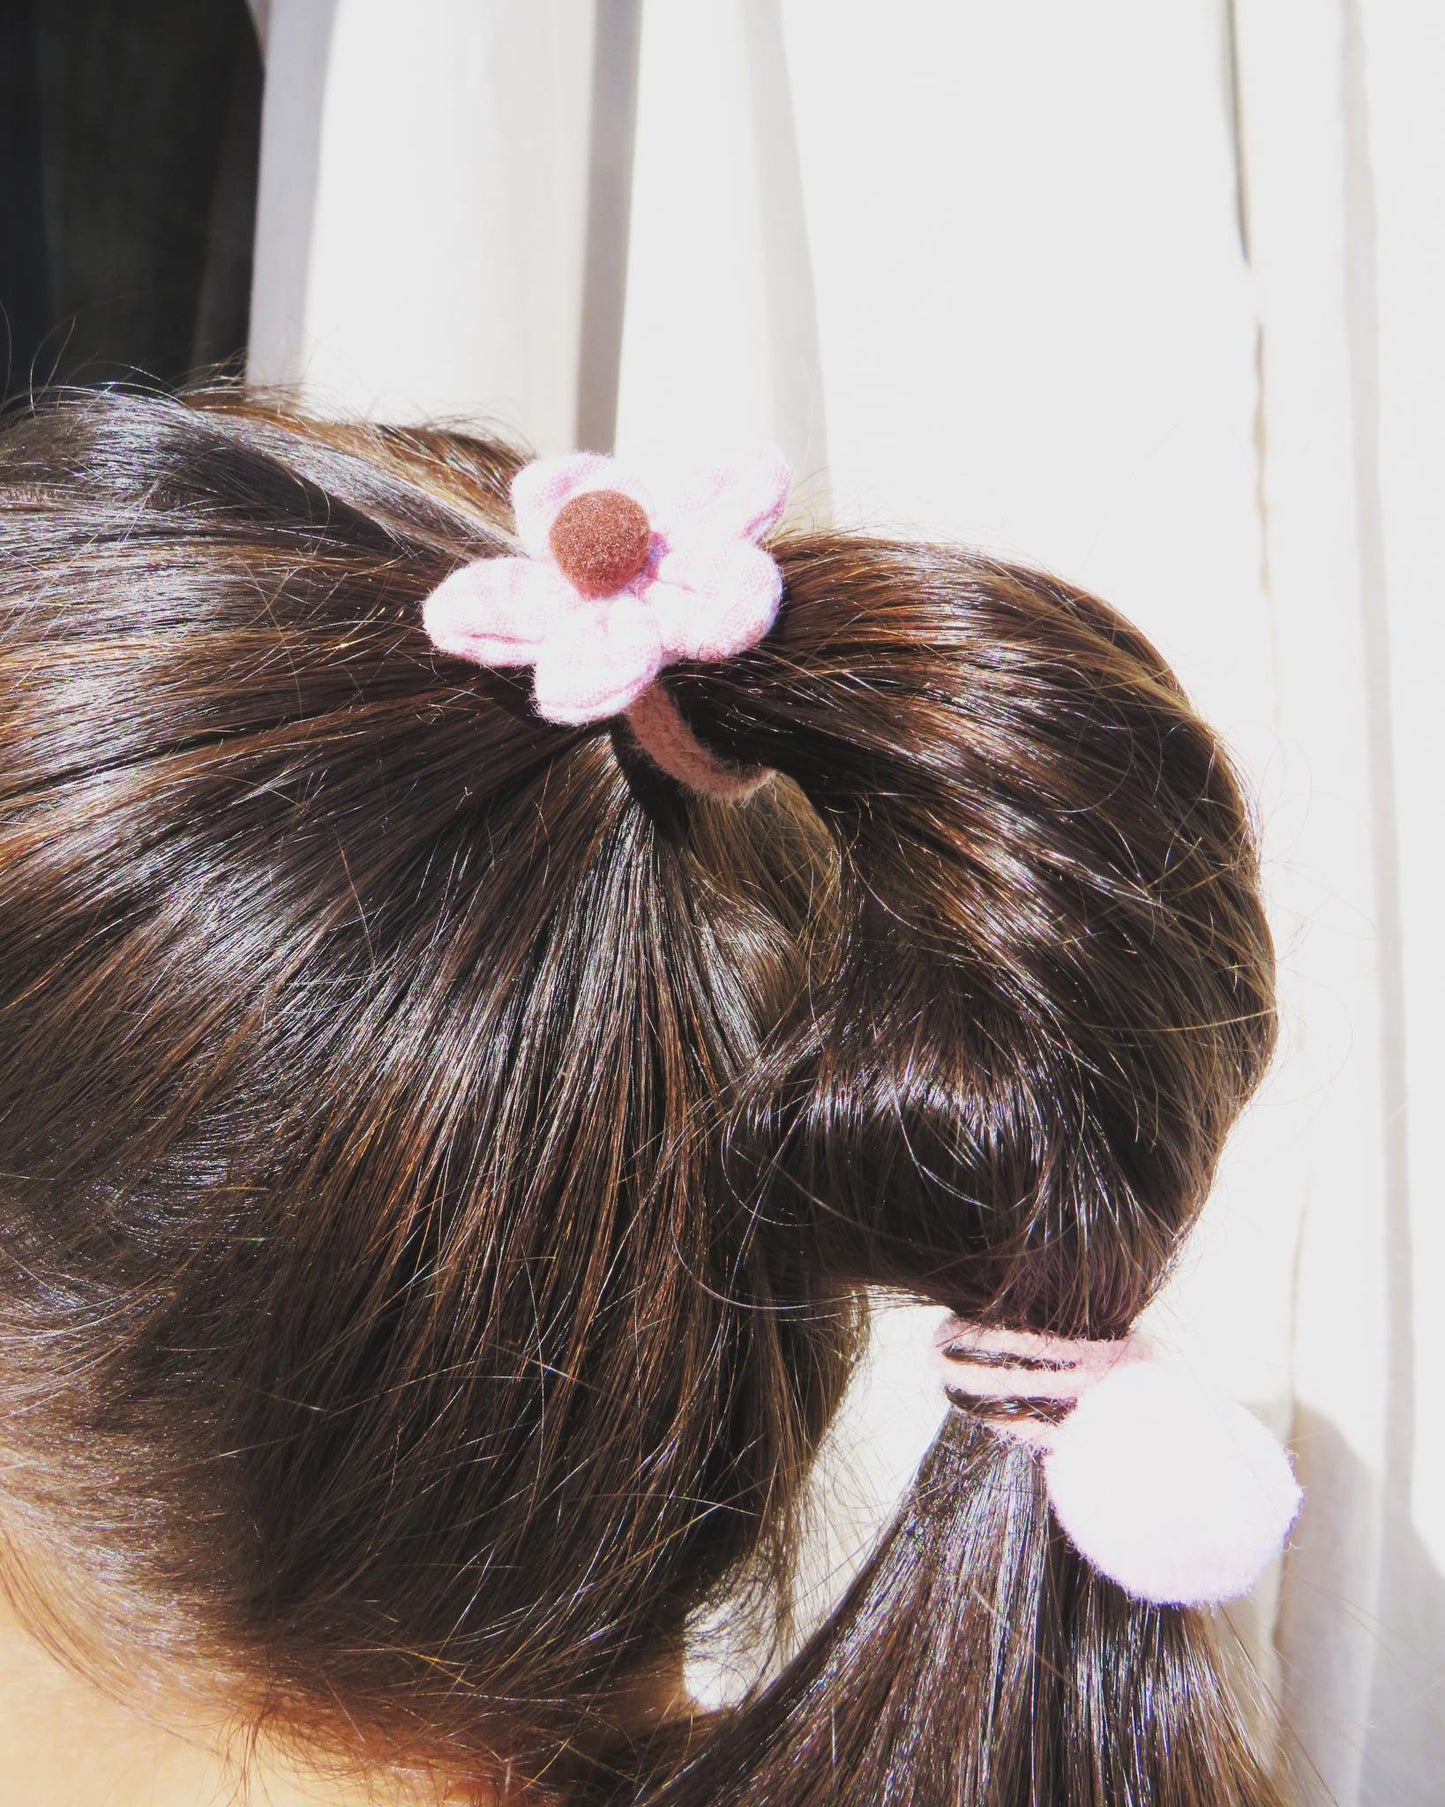 BUY 2 GET 1 FREE - Floral Hair Ties - Pink